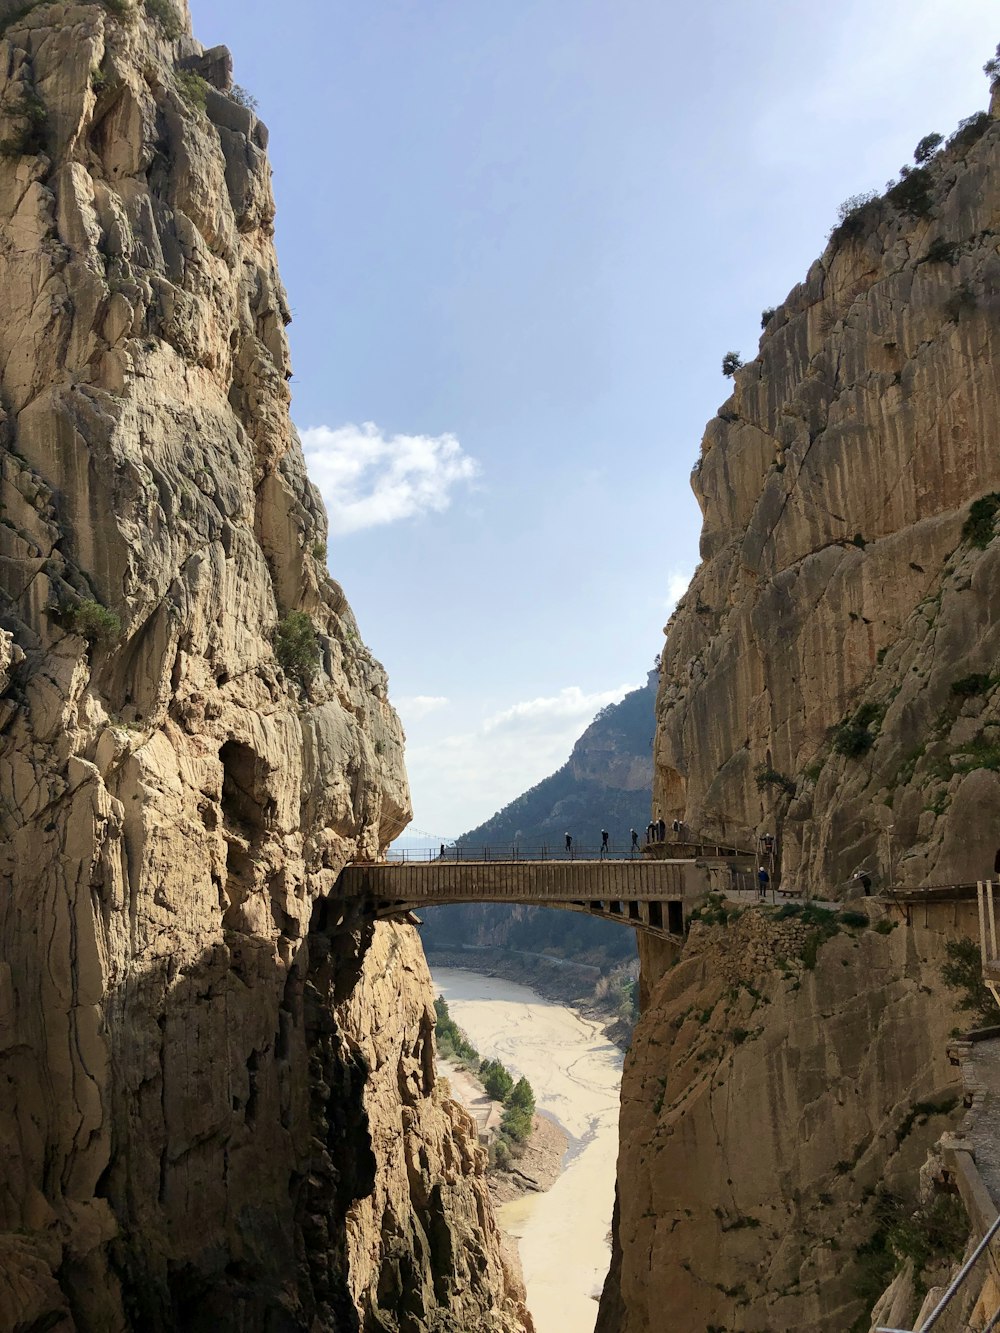 gray bridge between mountains during daytime